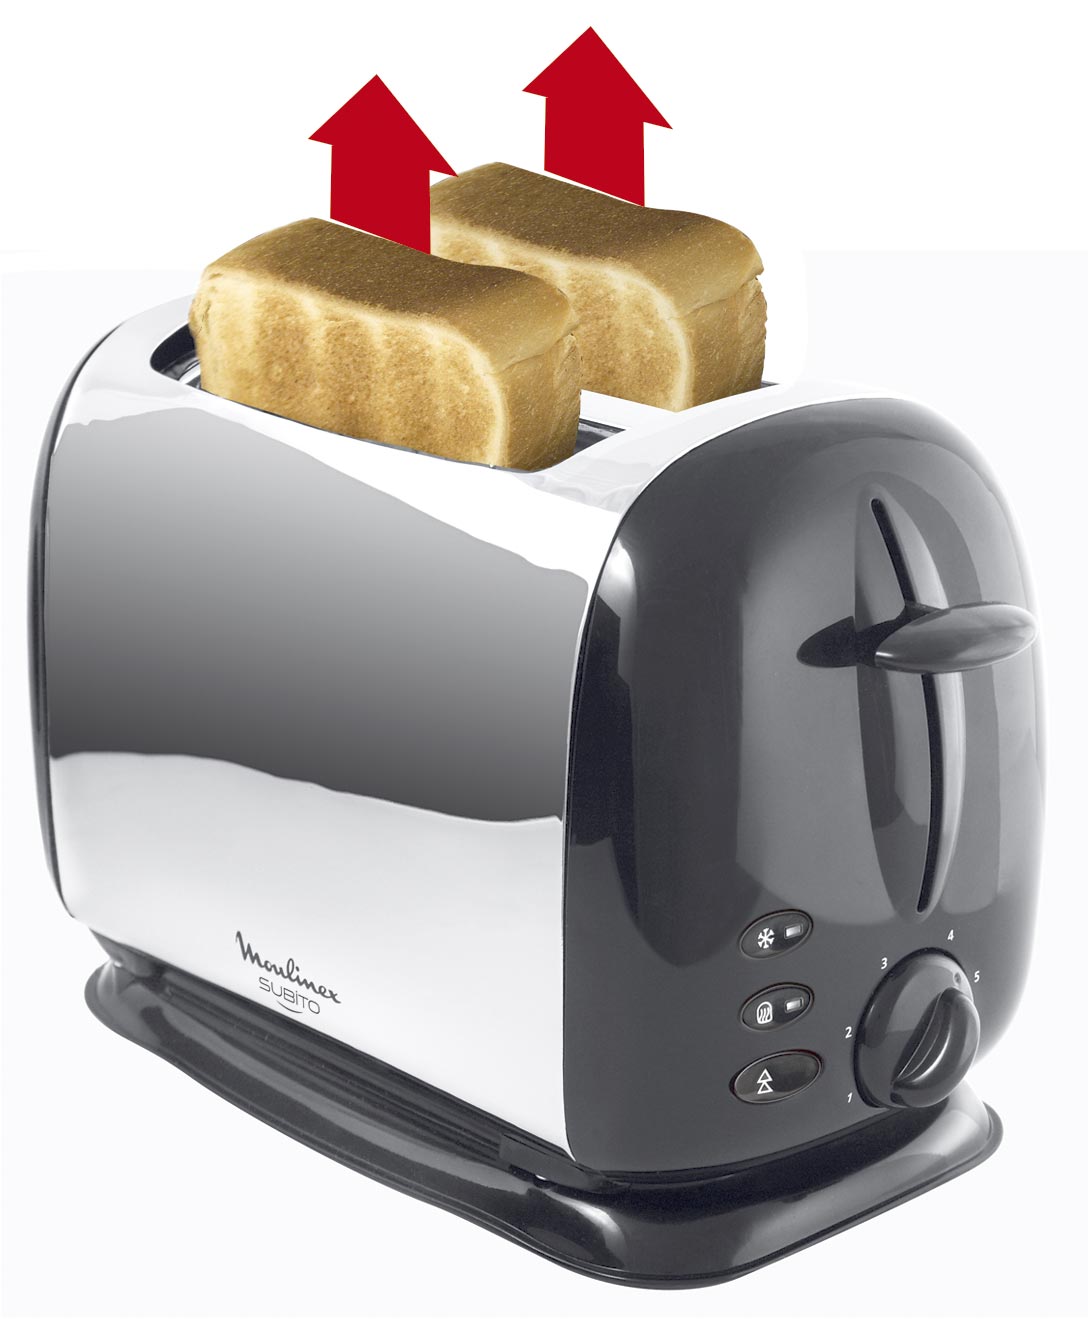 Bezpieczeństwo użytkowania tostera